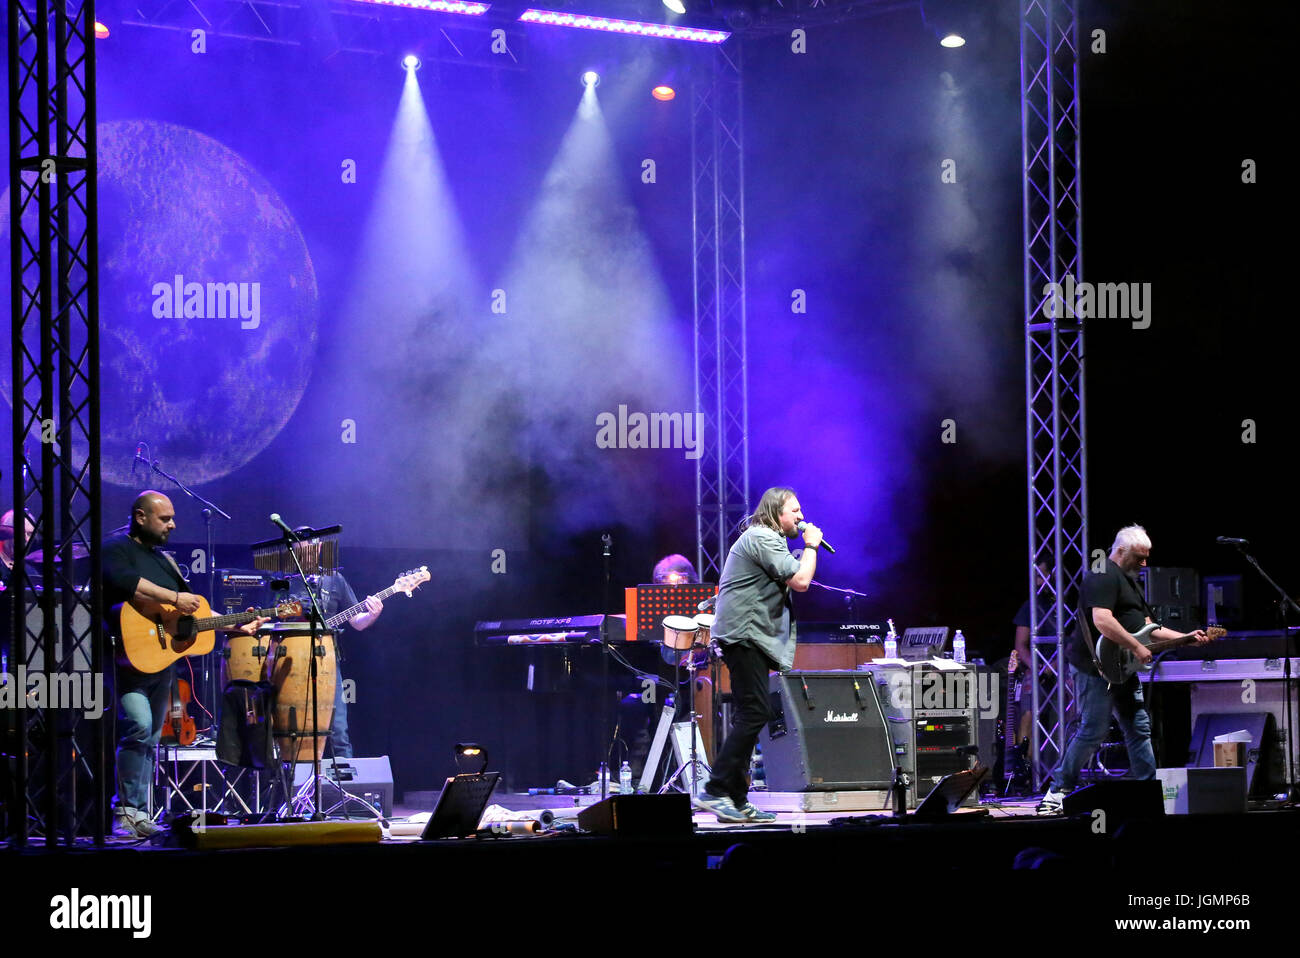 Bassano del Grappa, VI, Italia - 29 Aprile 2017: Nomadi una banda italiana sul palco durante il concerto dal vivo in Italia Foto Stock